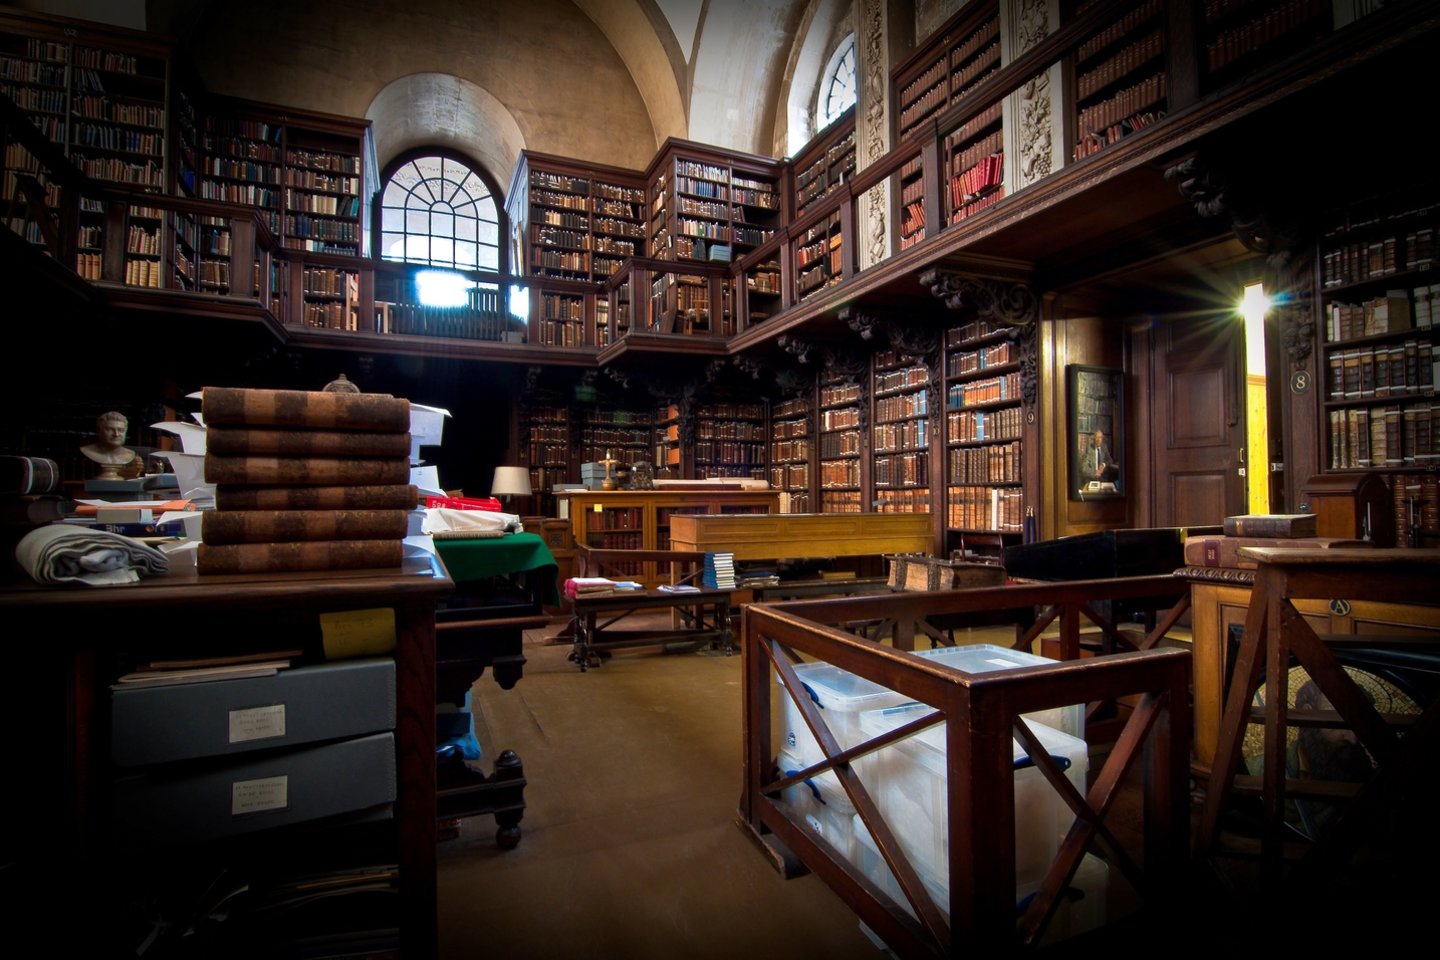  Bibliotekos, kuri iki renovacijos buvo mažai pasikeitusi nuo pat pastatymo 1709 m., lankytojai dažnai pastebėdavo, kad senų knygų kvapas jiems atrodo patrauklus.<br> Šv. Pauliaus katedros bibliotekos nuotr.